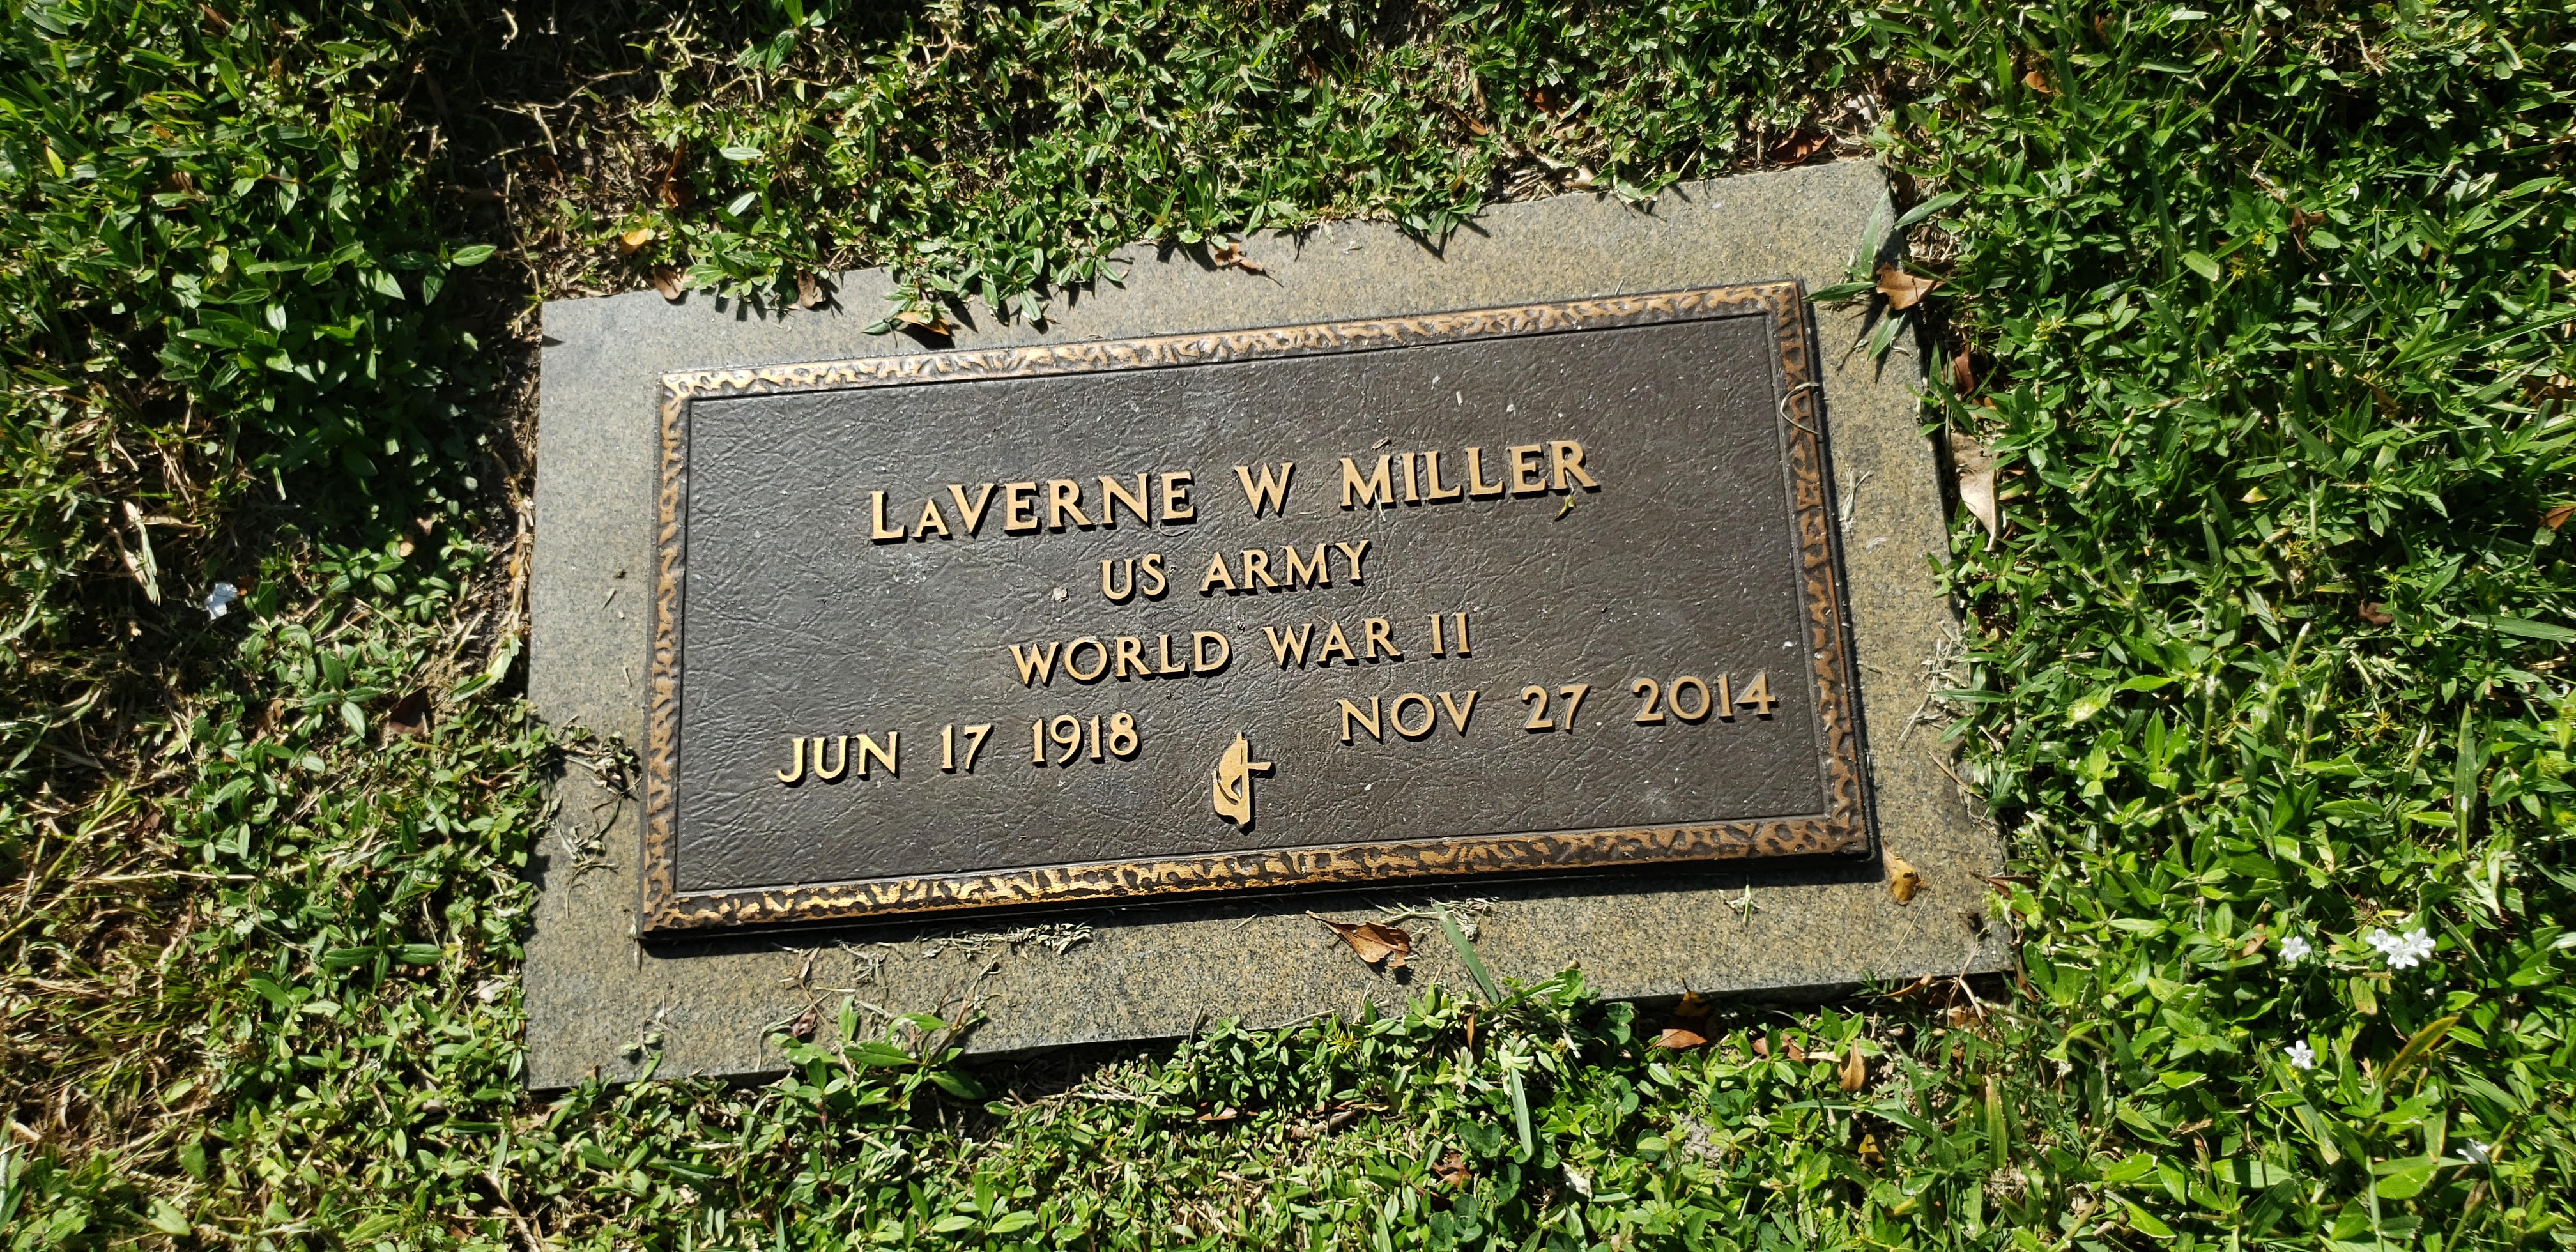 LaVerne W Miller